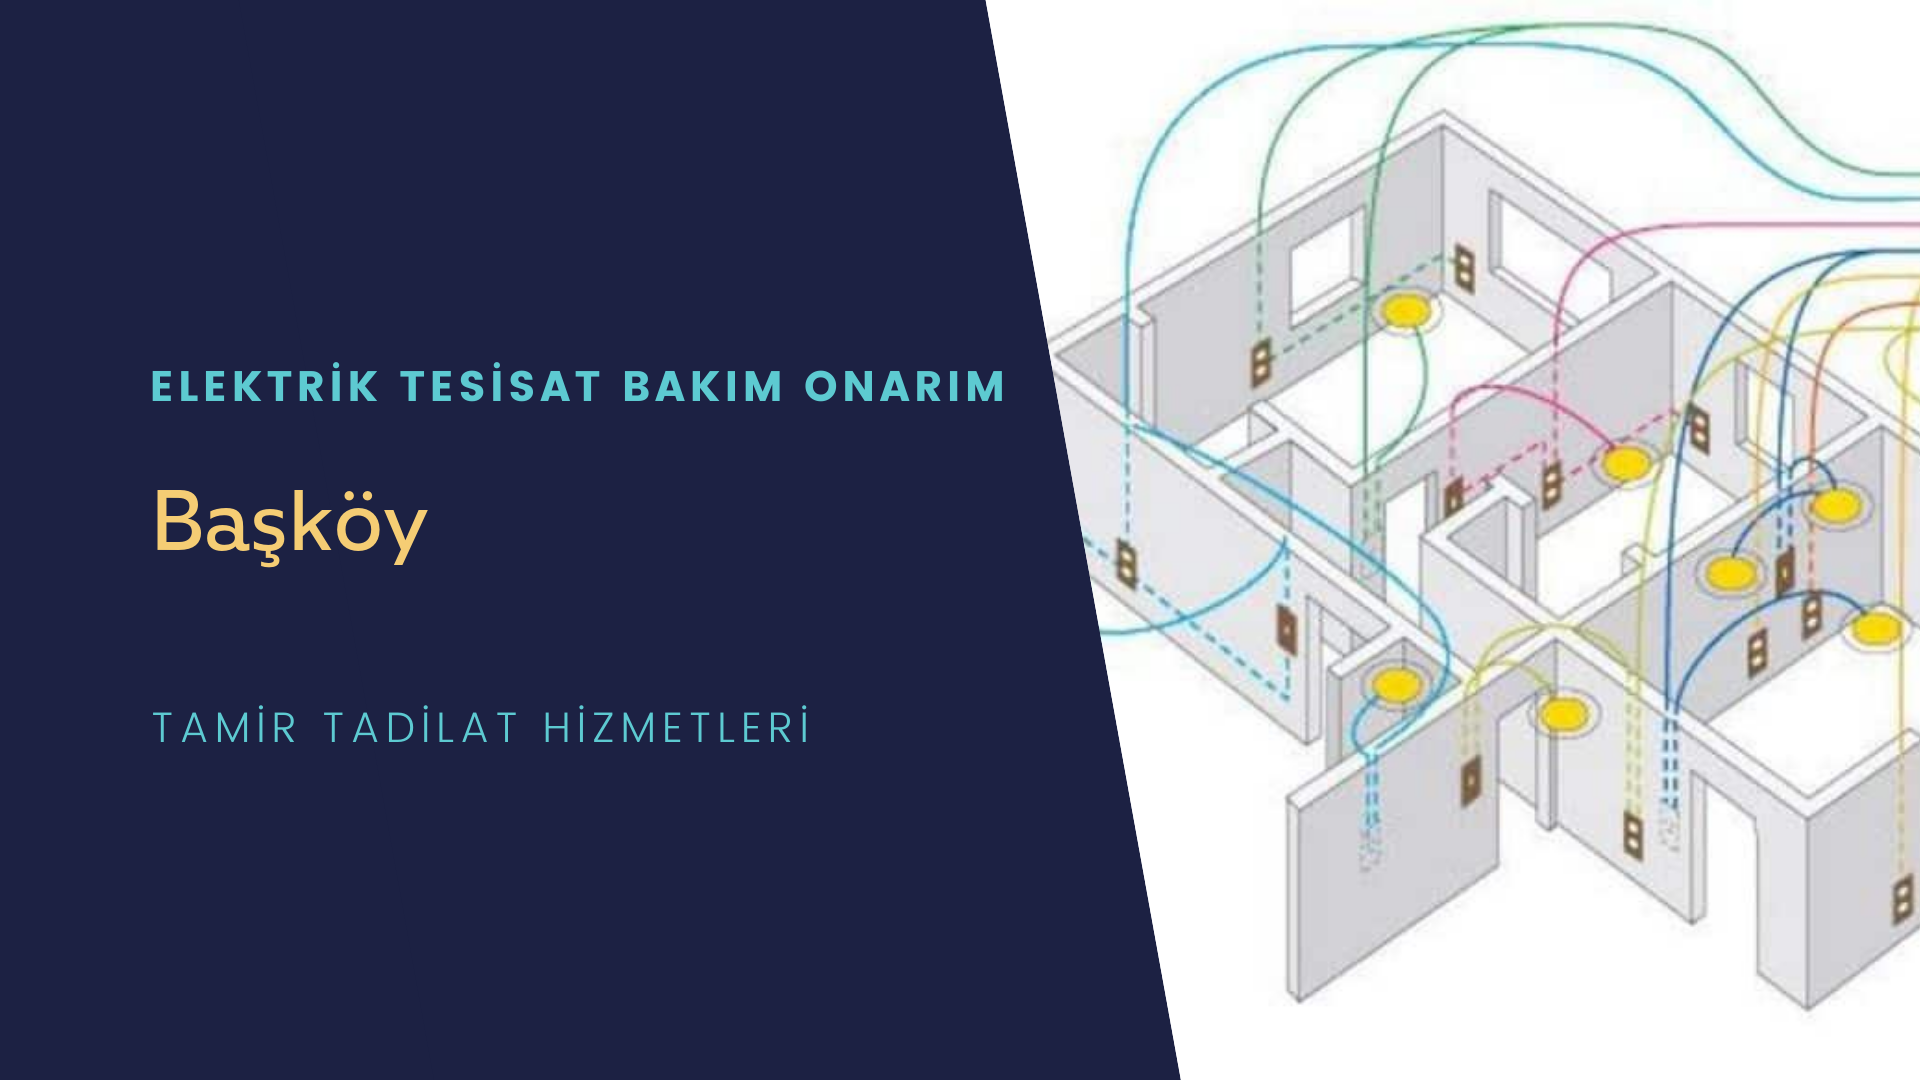 Başköy'de elektrik tesisatı ustalarımı arıyorsunuz doğru adrestenizi Başköy elektrik tesisatı ustalarımız 7/24 sizlere hizmet vermekten mutluluk duyar.